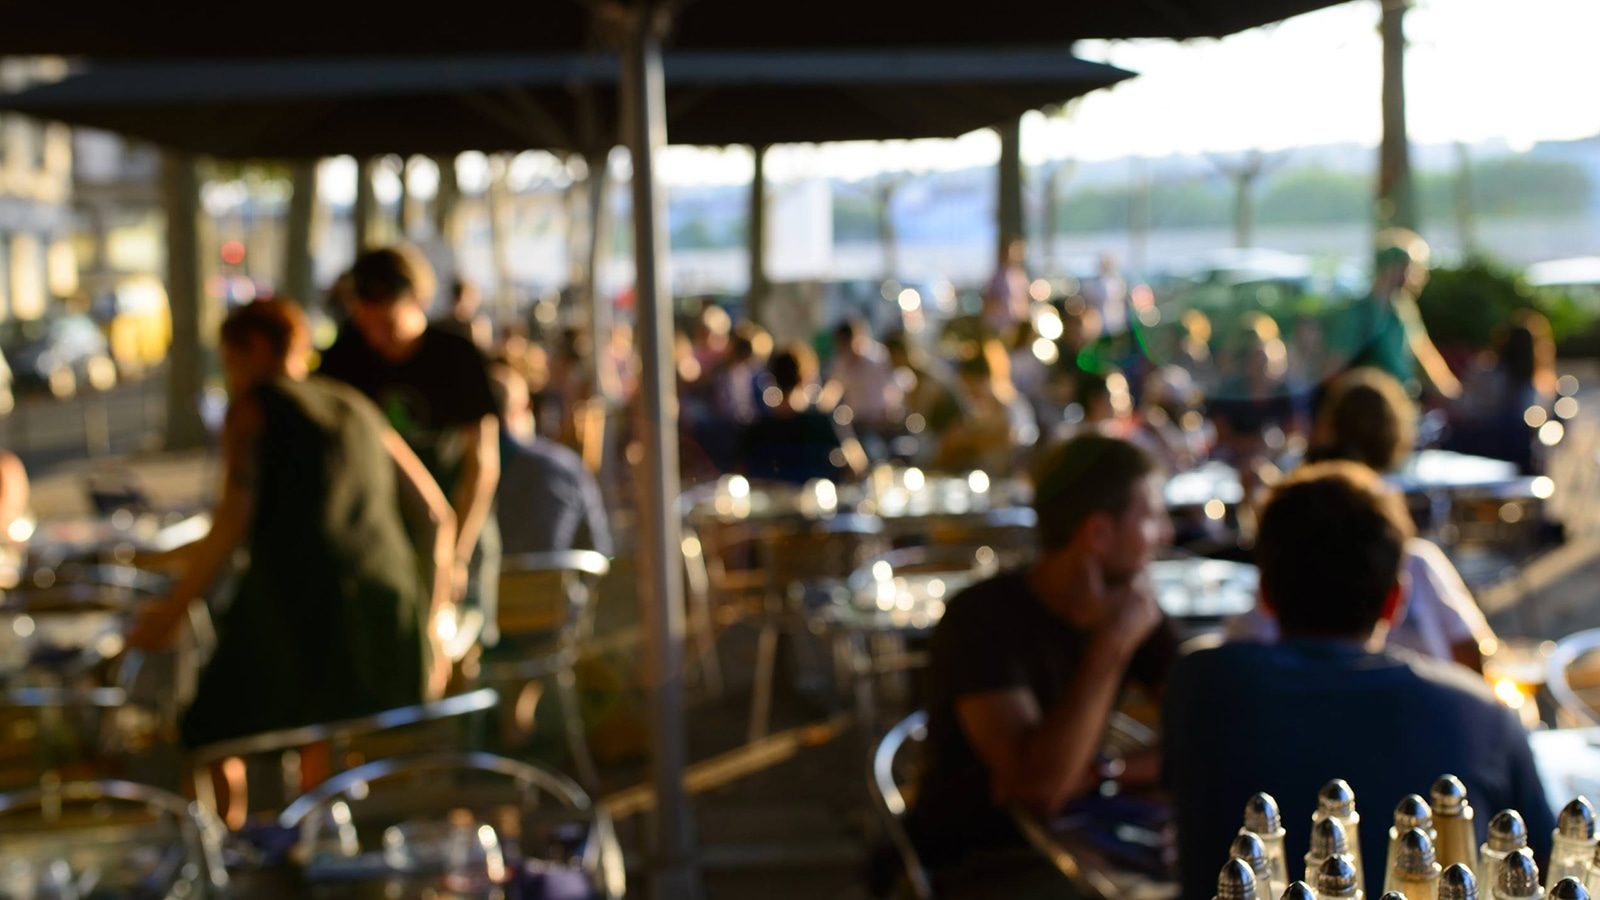 Bar le Mondrian offre une belle terrasse sur les berges du Rhône.